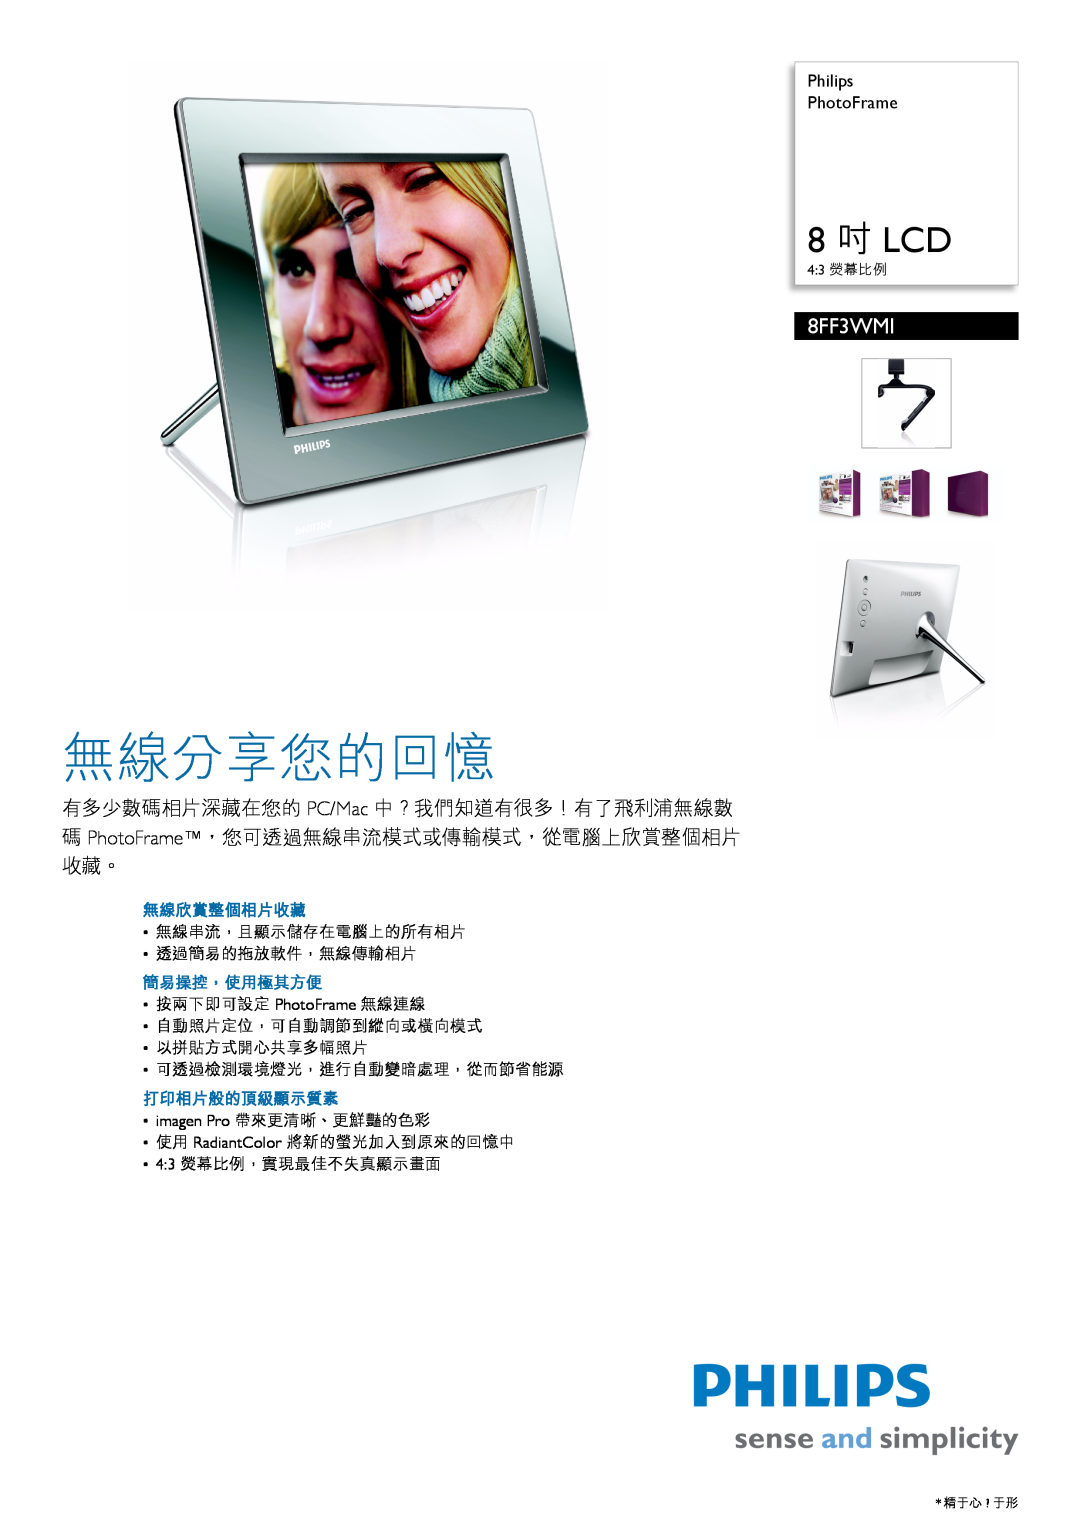 Philips 8FF3WMI manual PhotoFrame, RU ǝȀǷǻǯǻǱǾǿǯǻ ǼǻǸȉǴǻǯǭǿǲǸȌ3, Register your product and get support at 